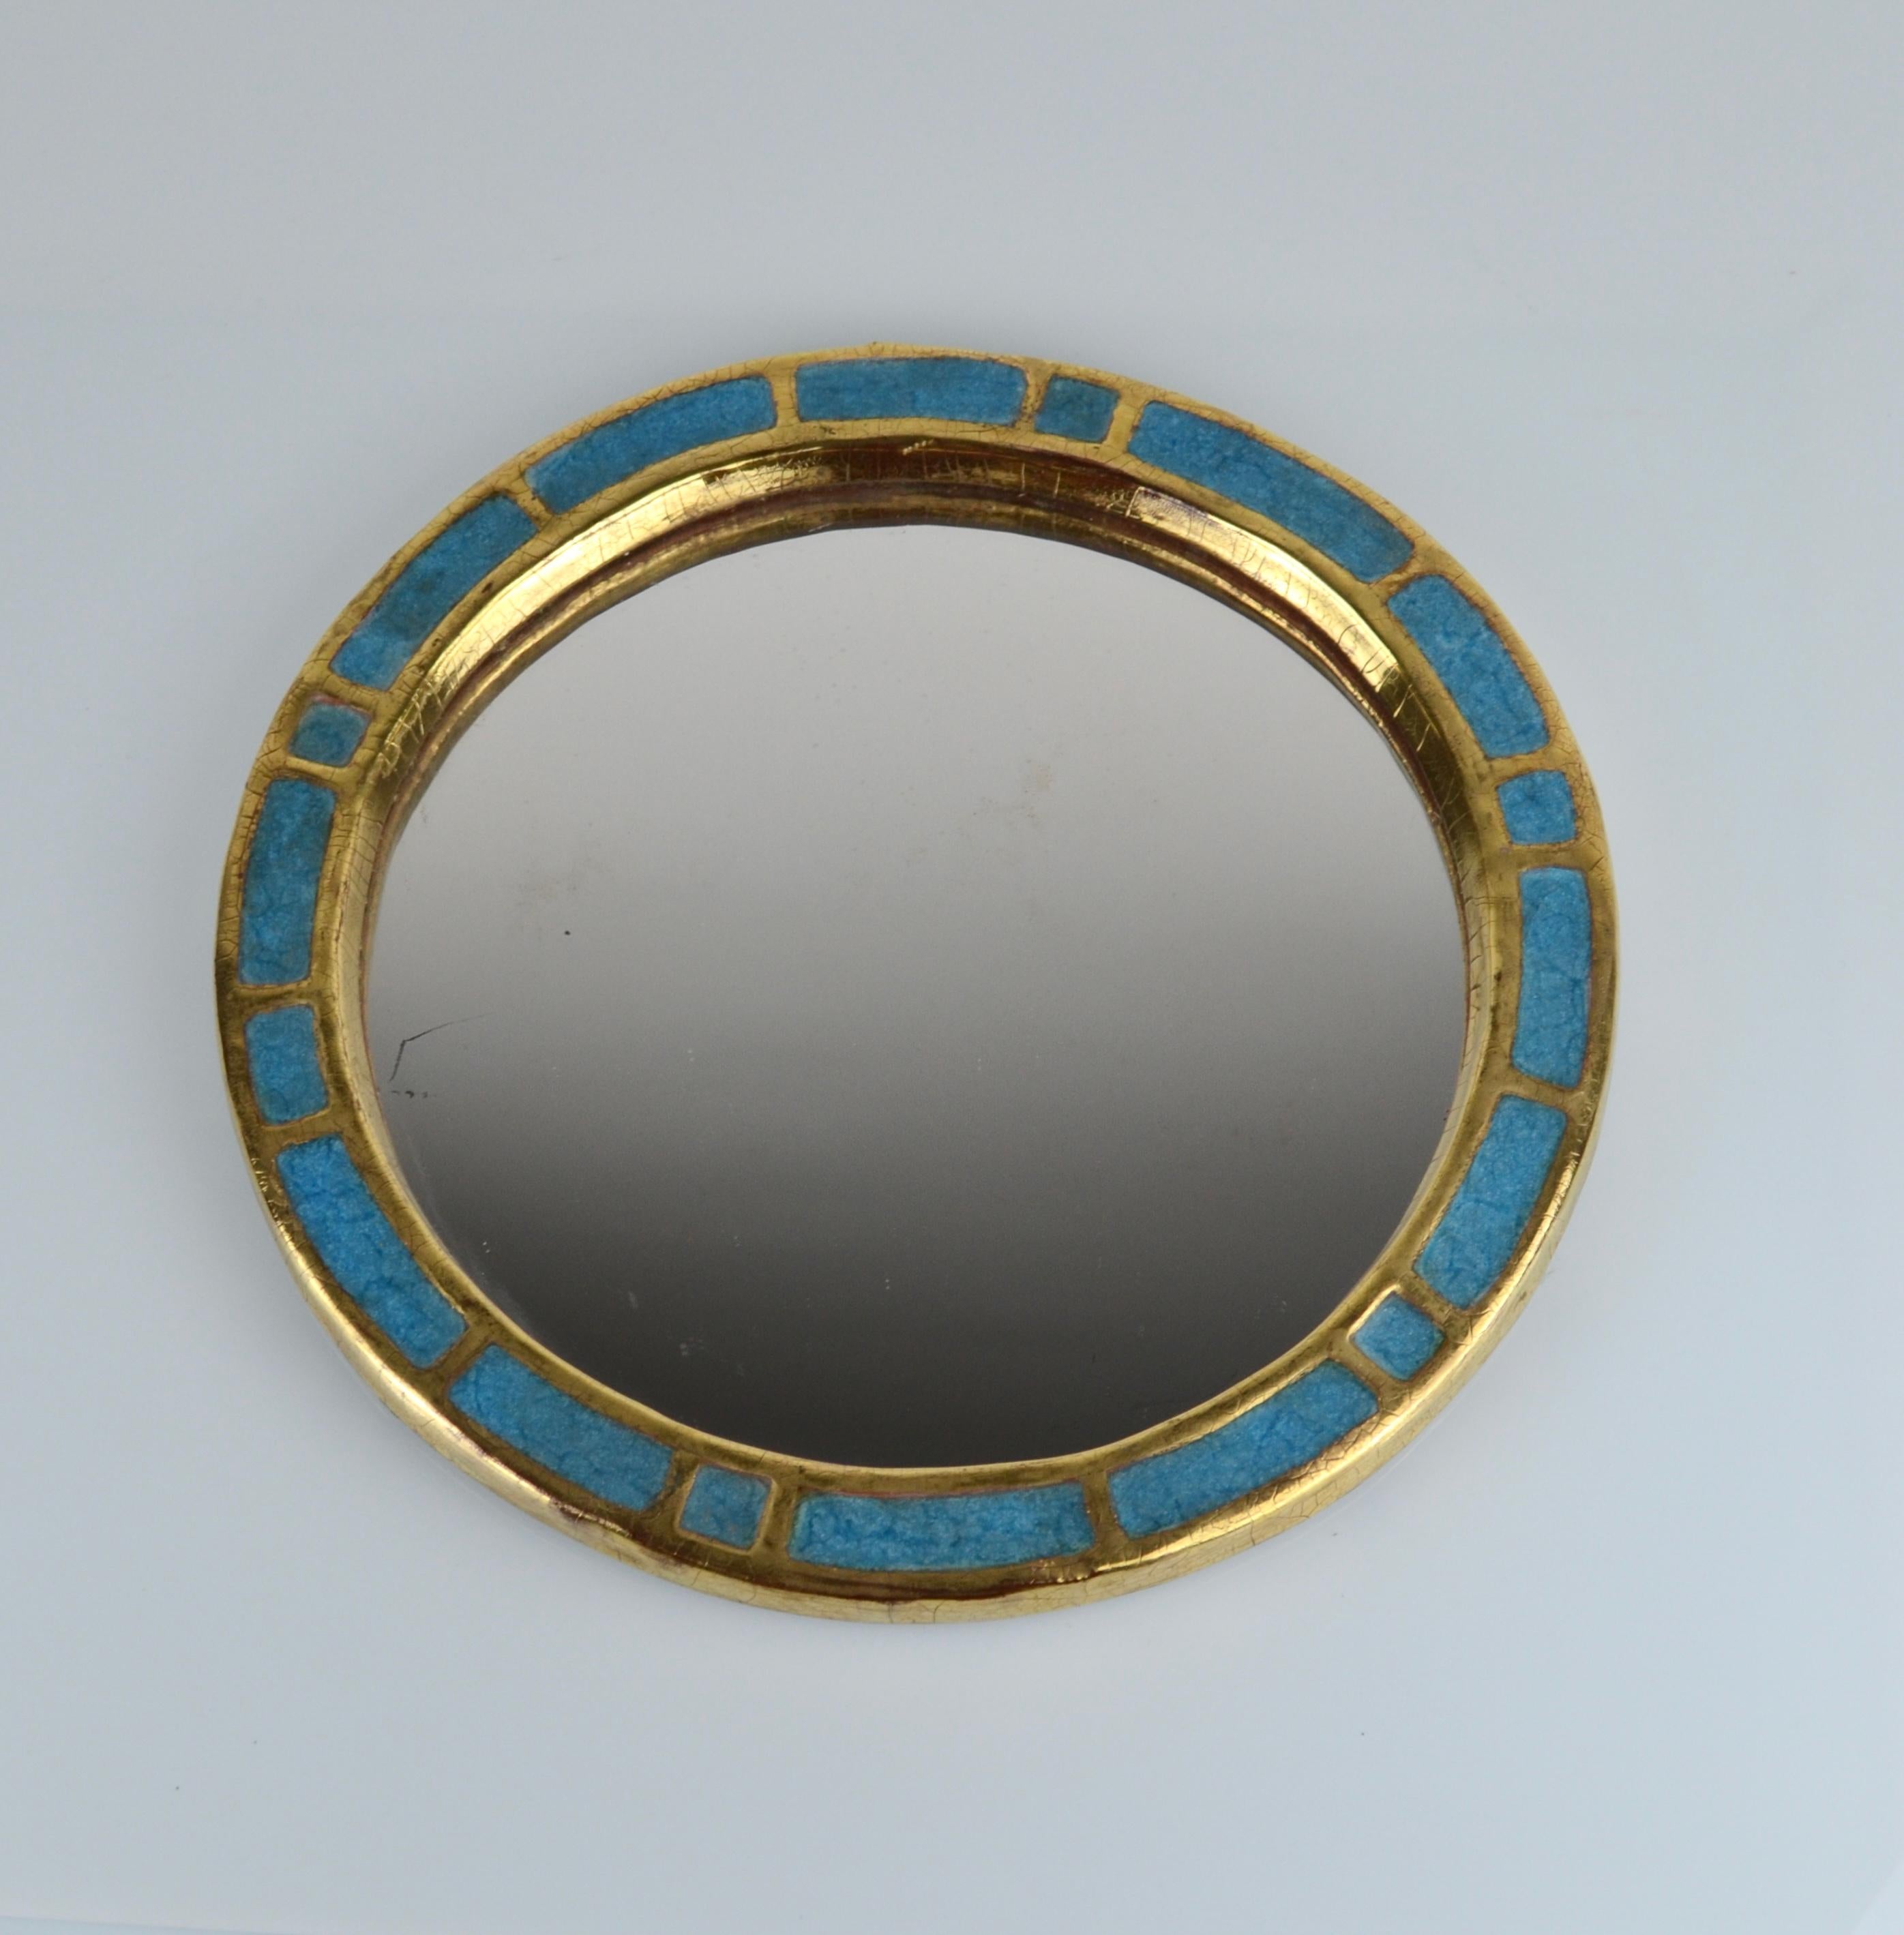 Mithé Espelt, miroir en céramique, vers 1960, France.
Faïence émaillée et gaufrée.
Céramique bleue et dorée craquelée.
Support original en feutre.

